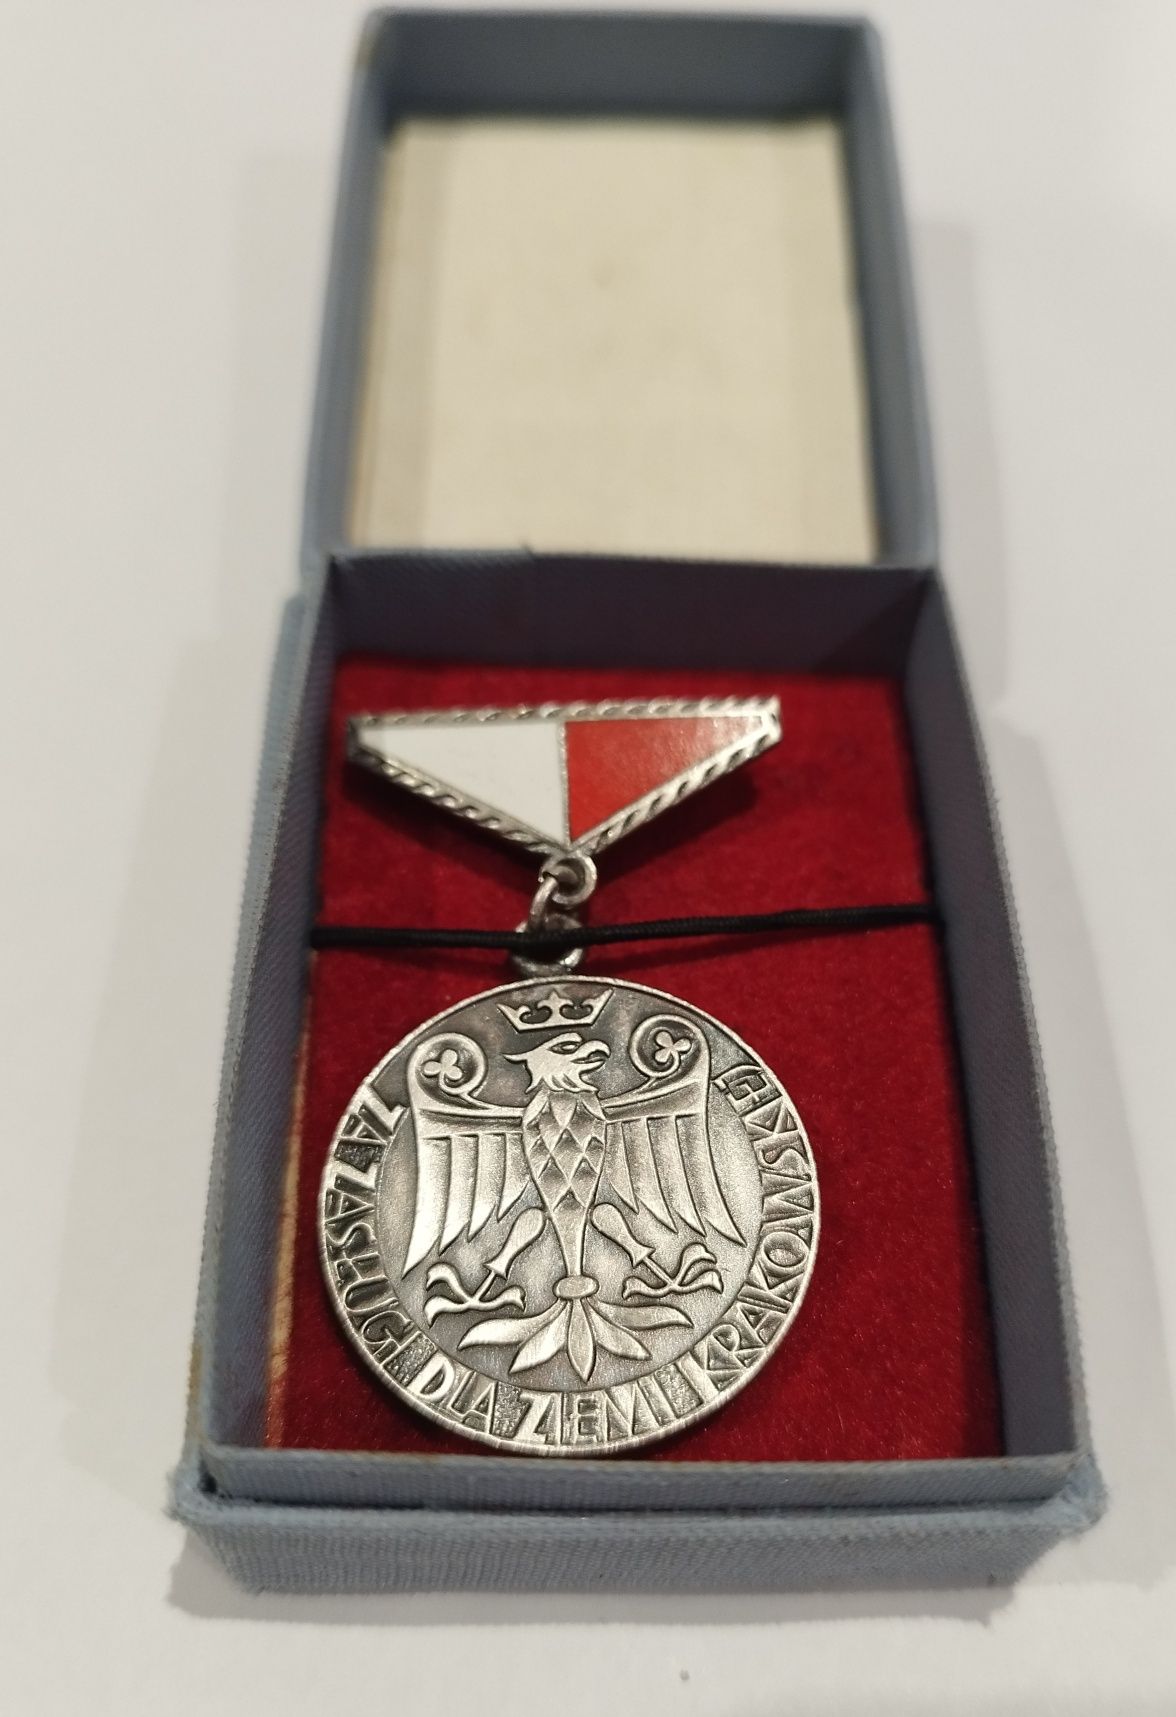 Odznaka za zasługi dla Ziemi Krakowskiej